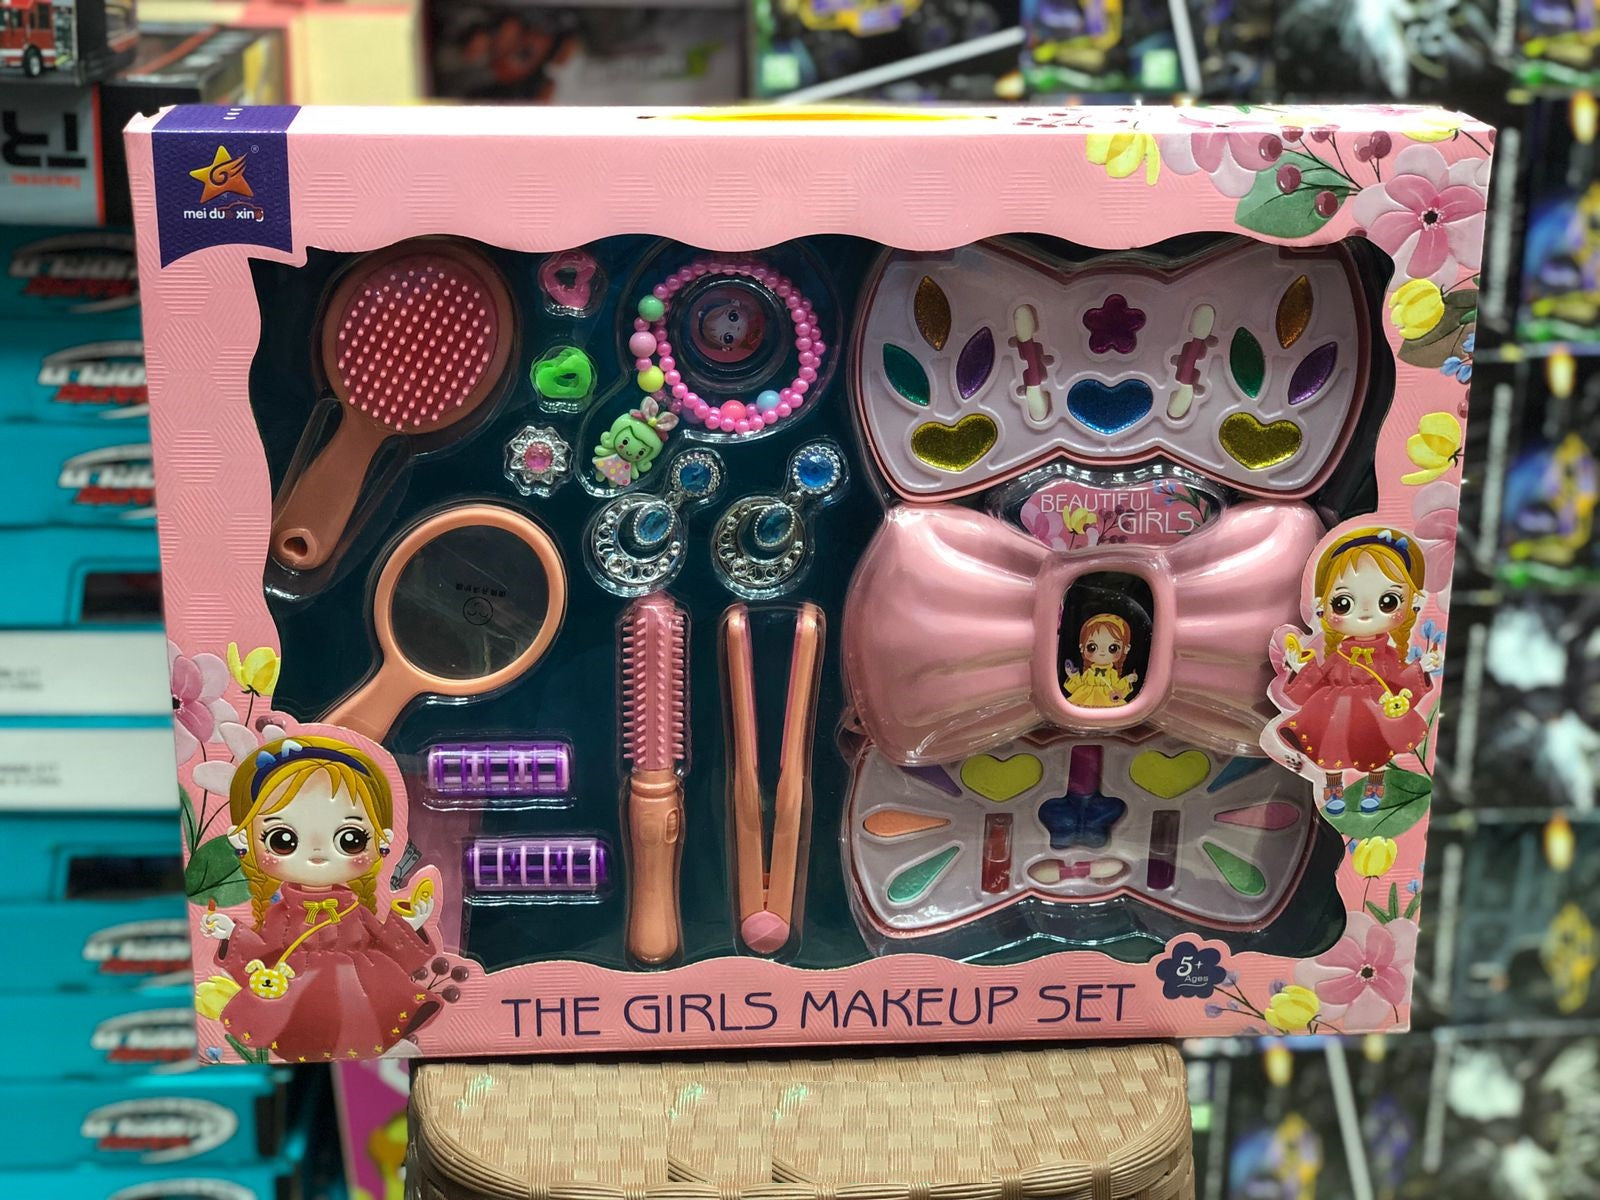 The Girls Makeup Set